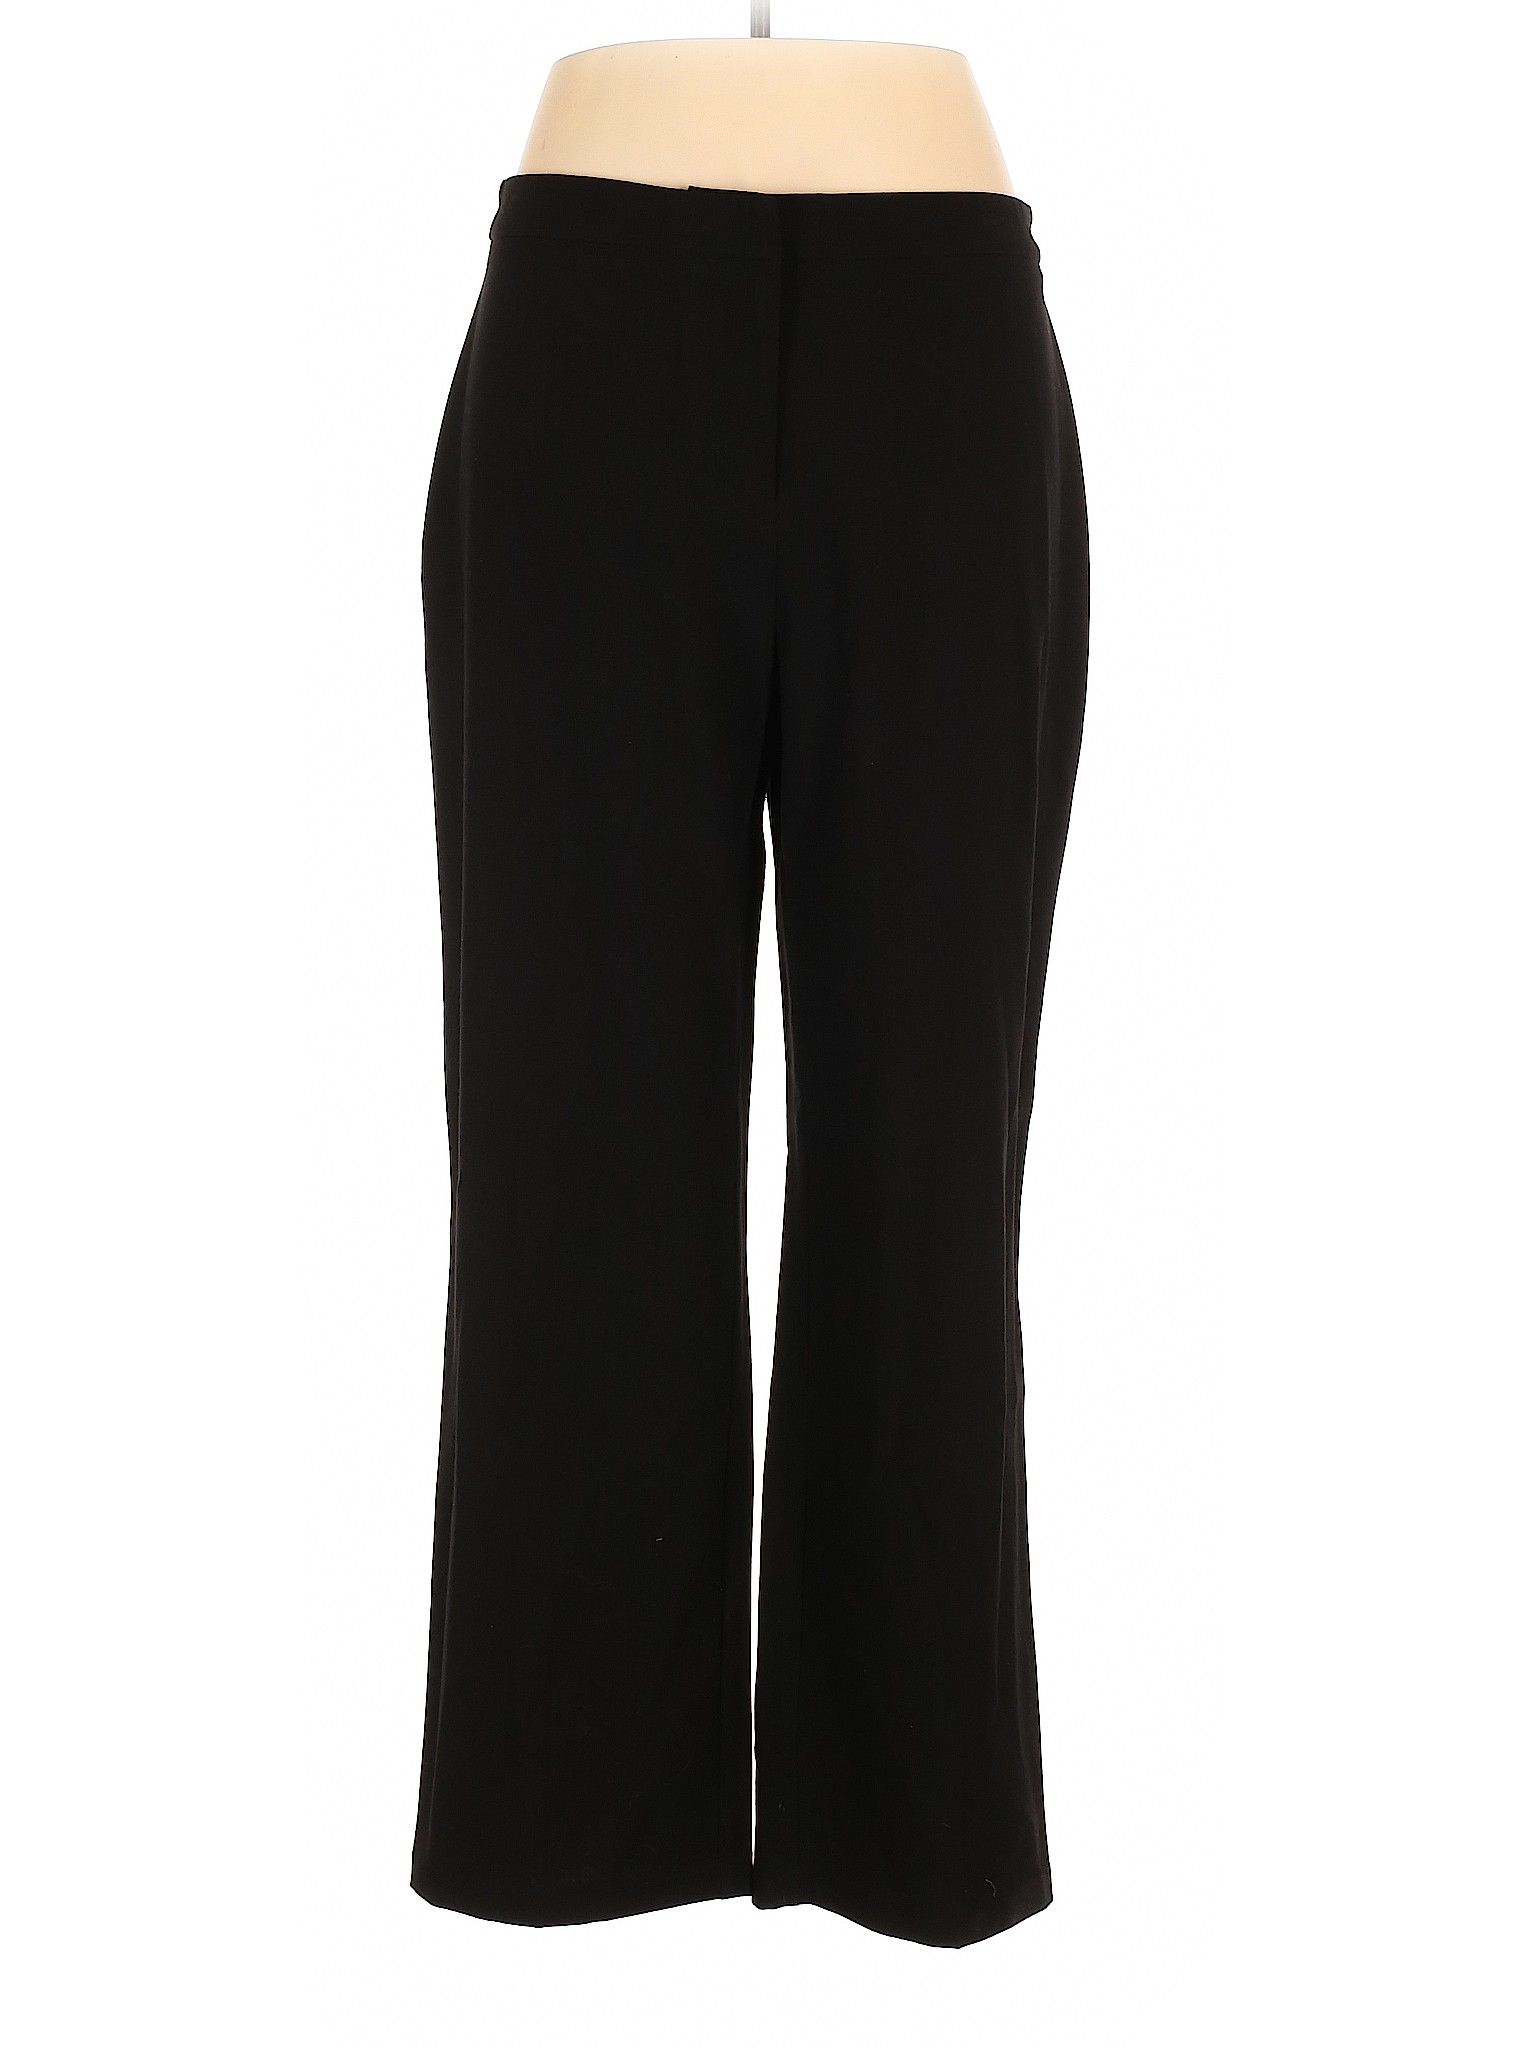 212 Collection Women Black Dress Pants 14 | eBay